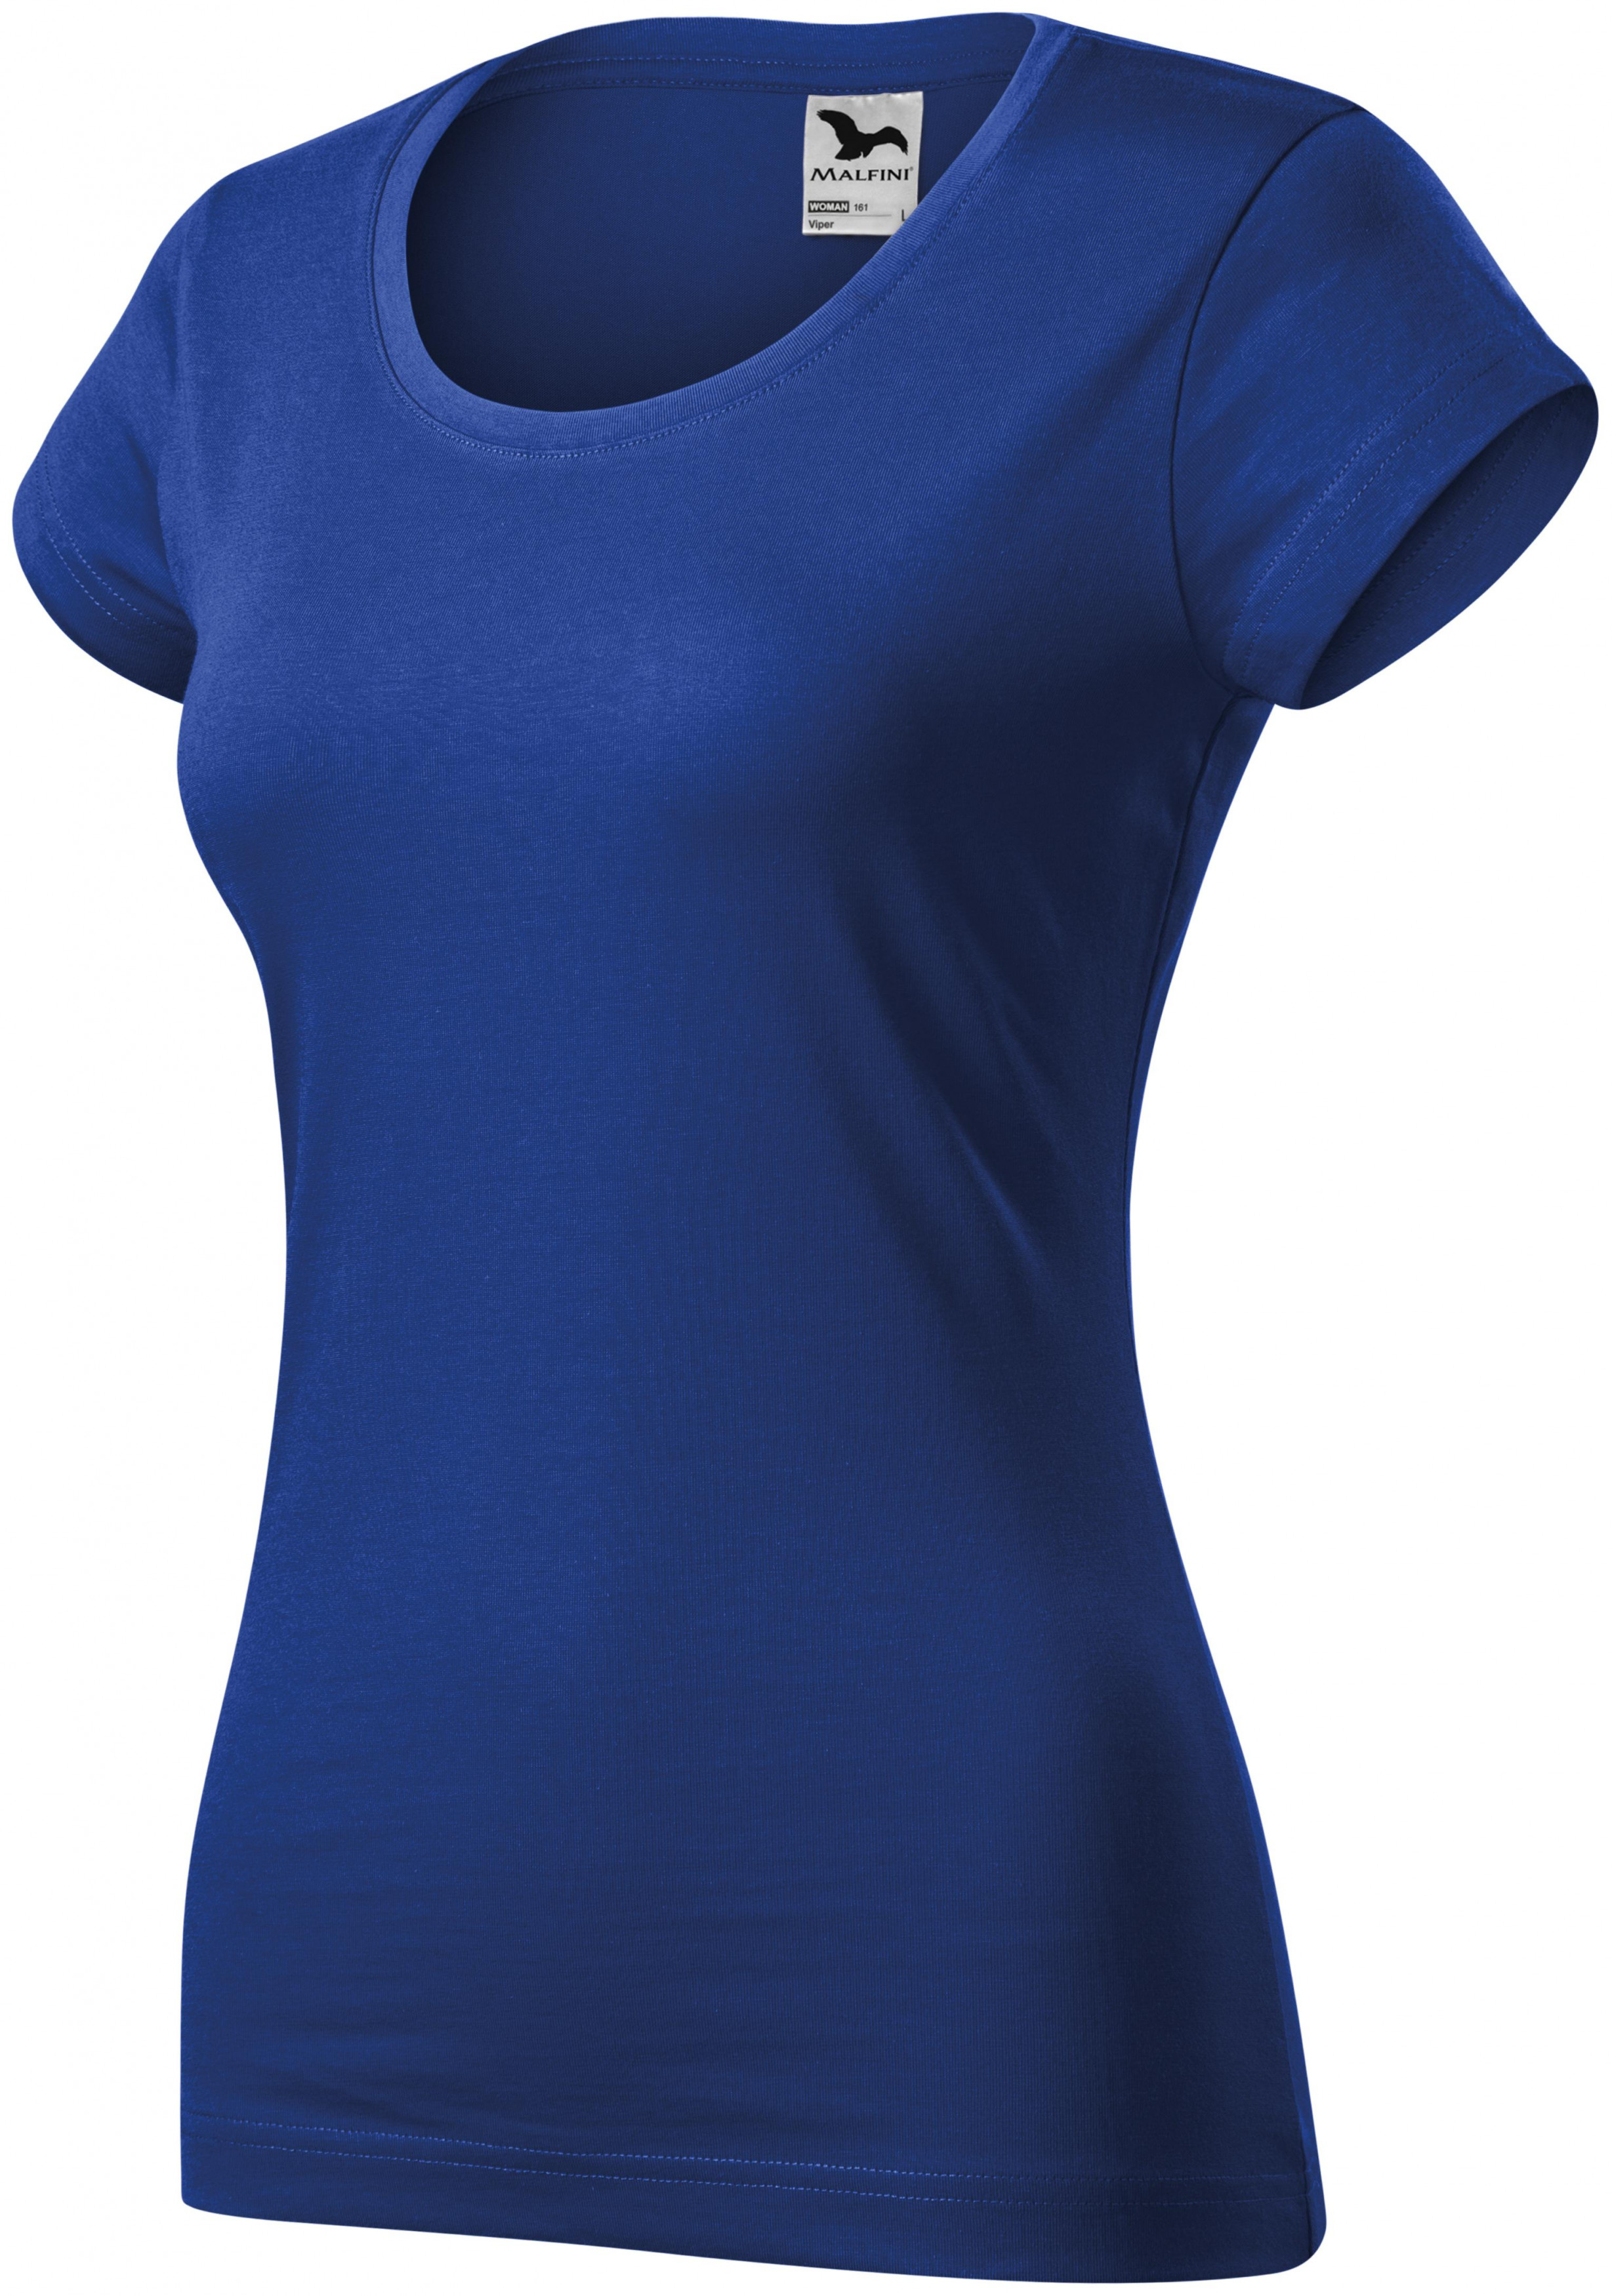 Dámske tričko zúžené s okrúhlym výstrihom, kráľovská modrá, XL